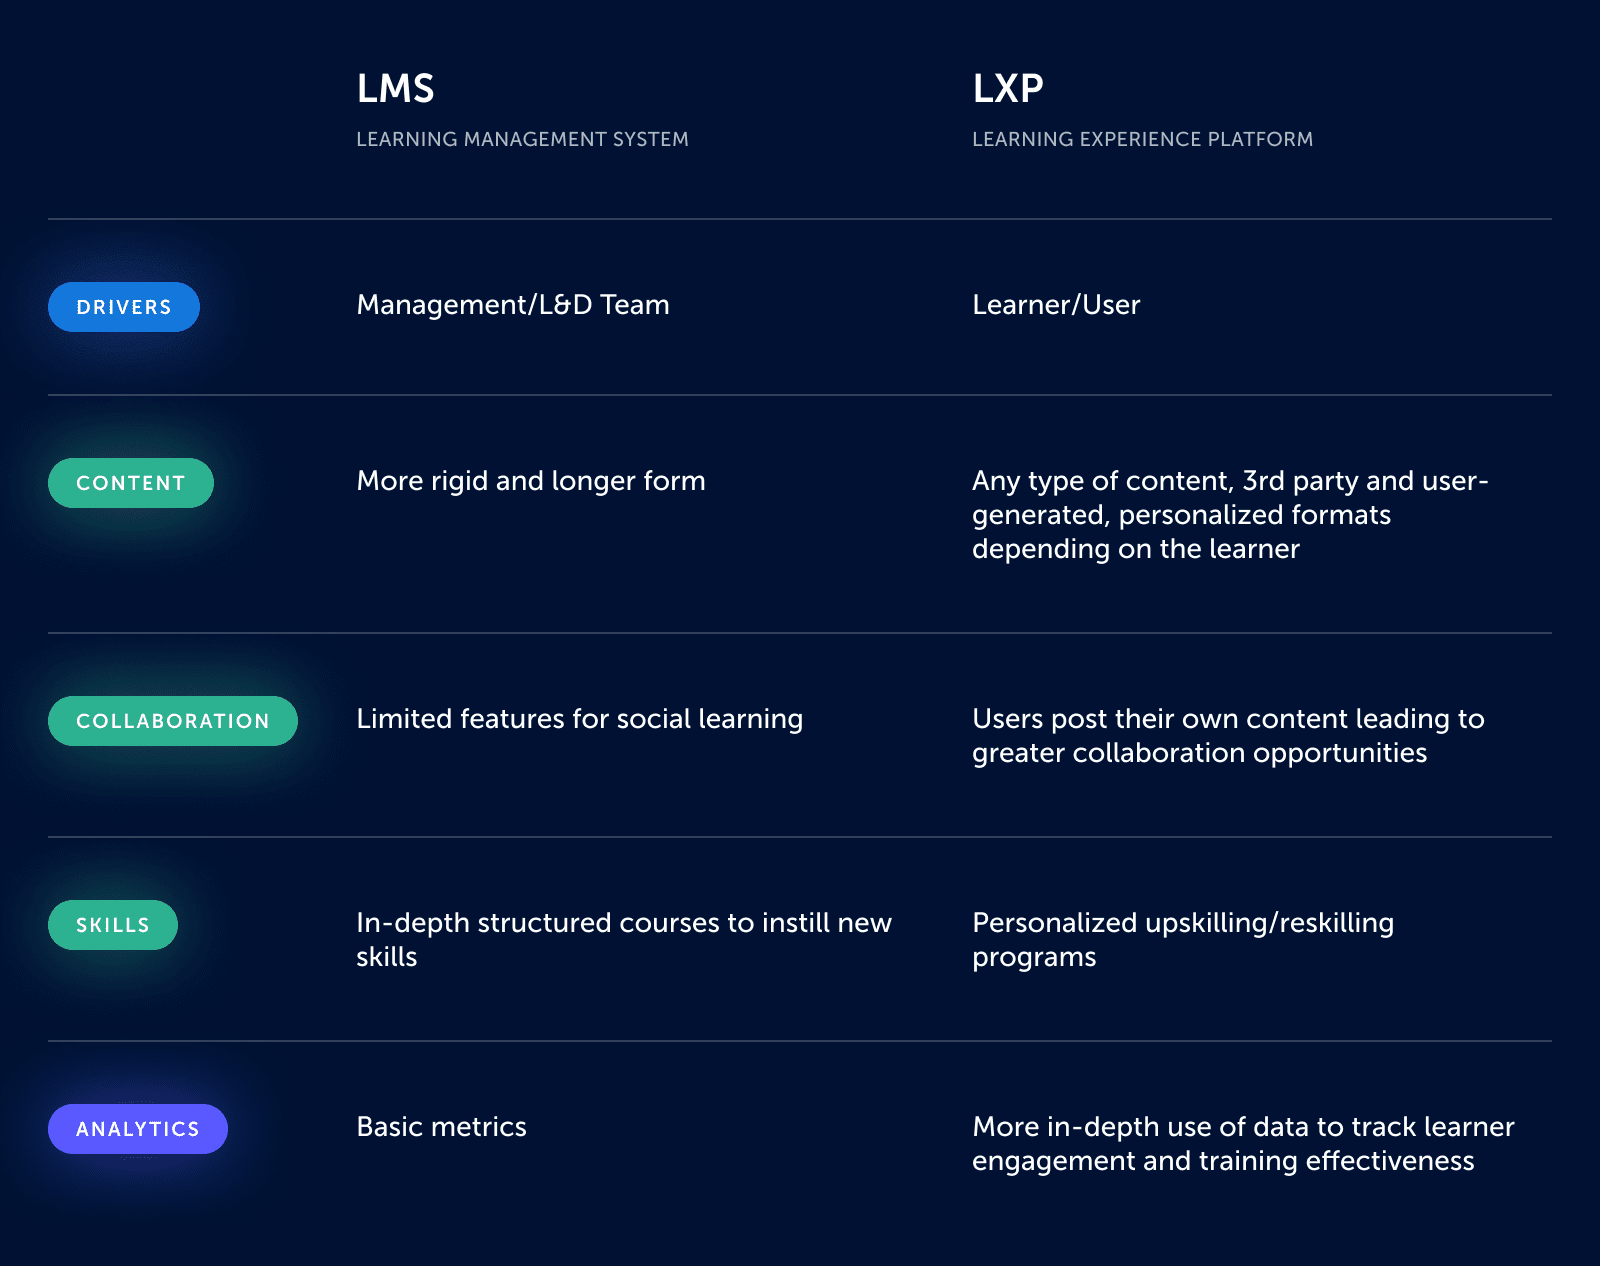 Das Bild zeigt den Vergleich zwischen LXP und LMS anhand von 5 Schlüsselelementen: Treiber, Inhalte, Zusammenarbeit, Fertigkeiten und Analysen